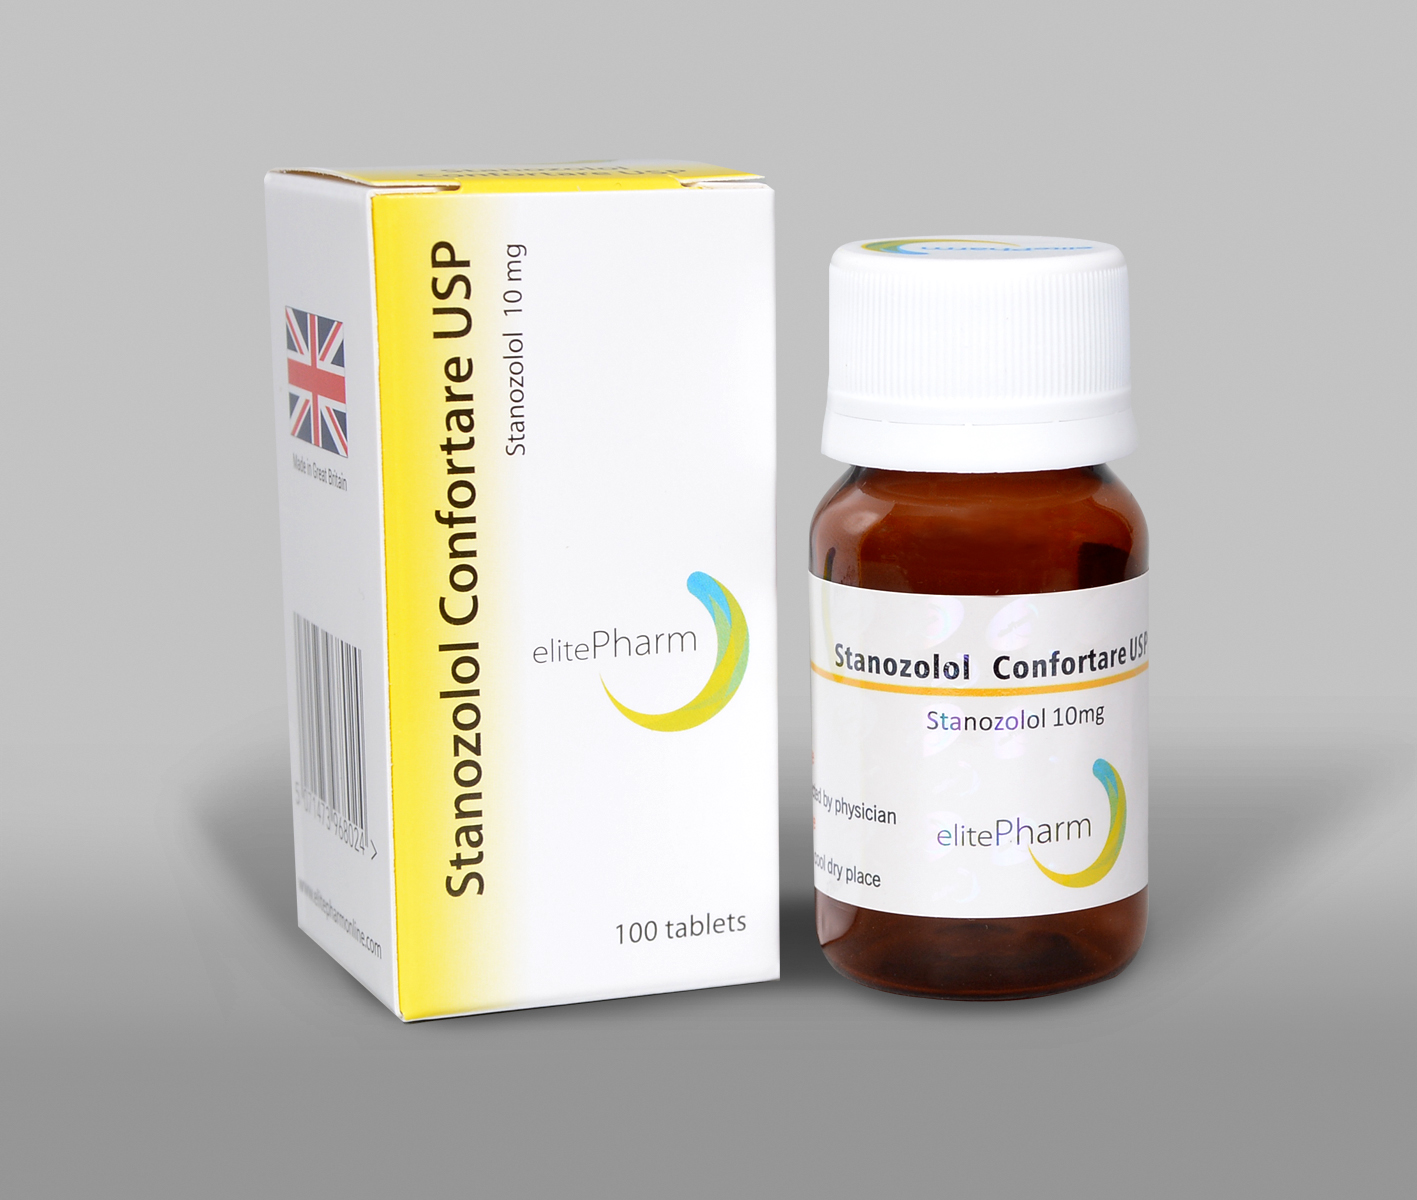 Stanozolol Confortare USP